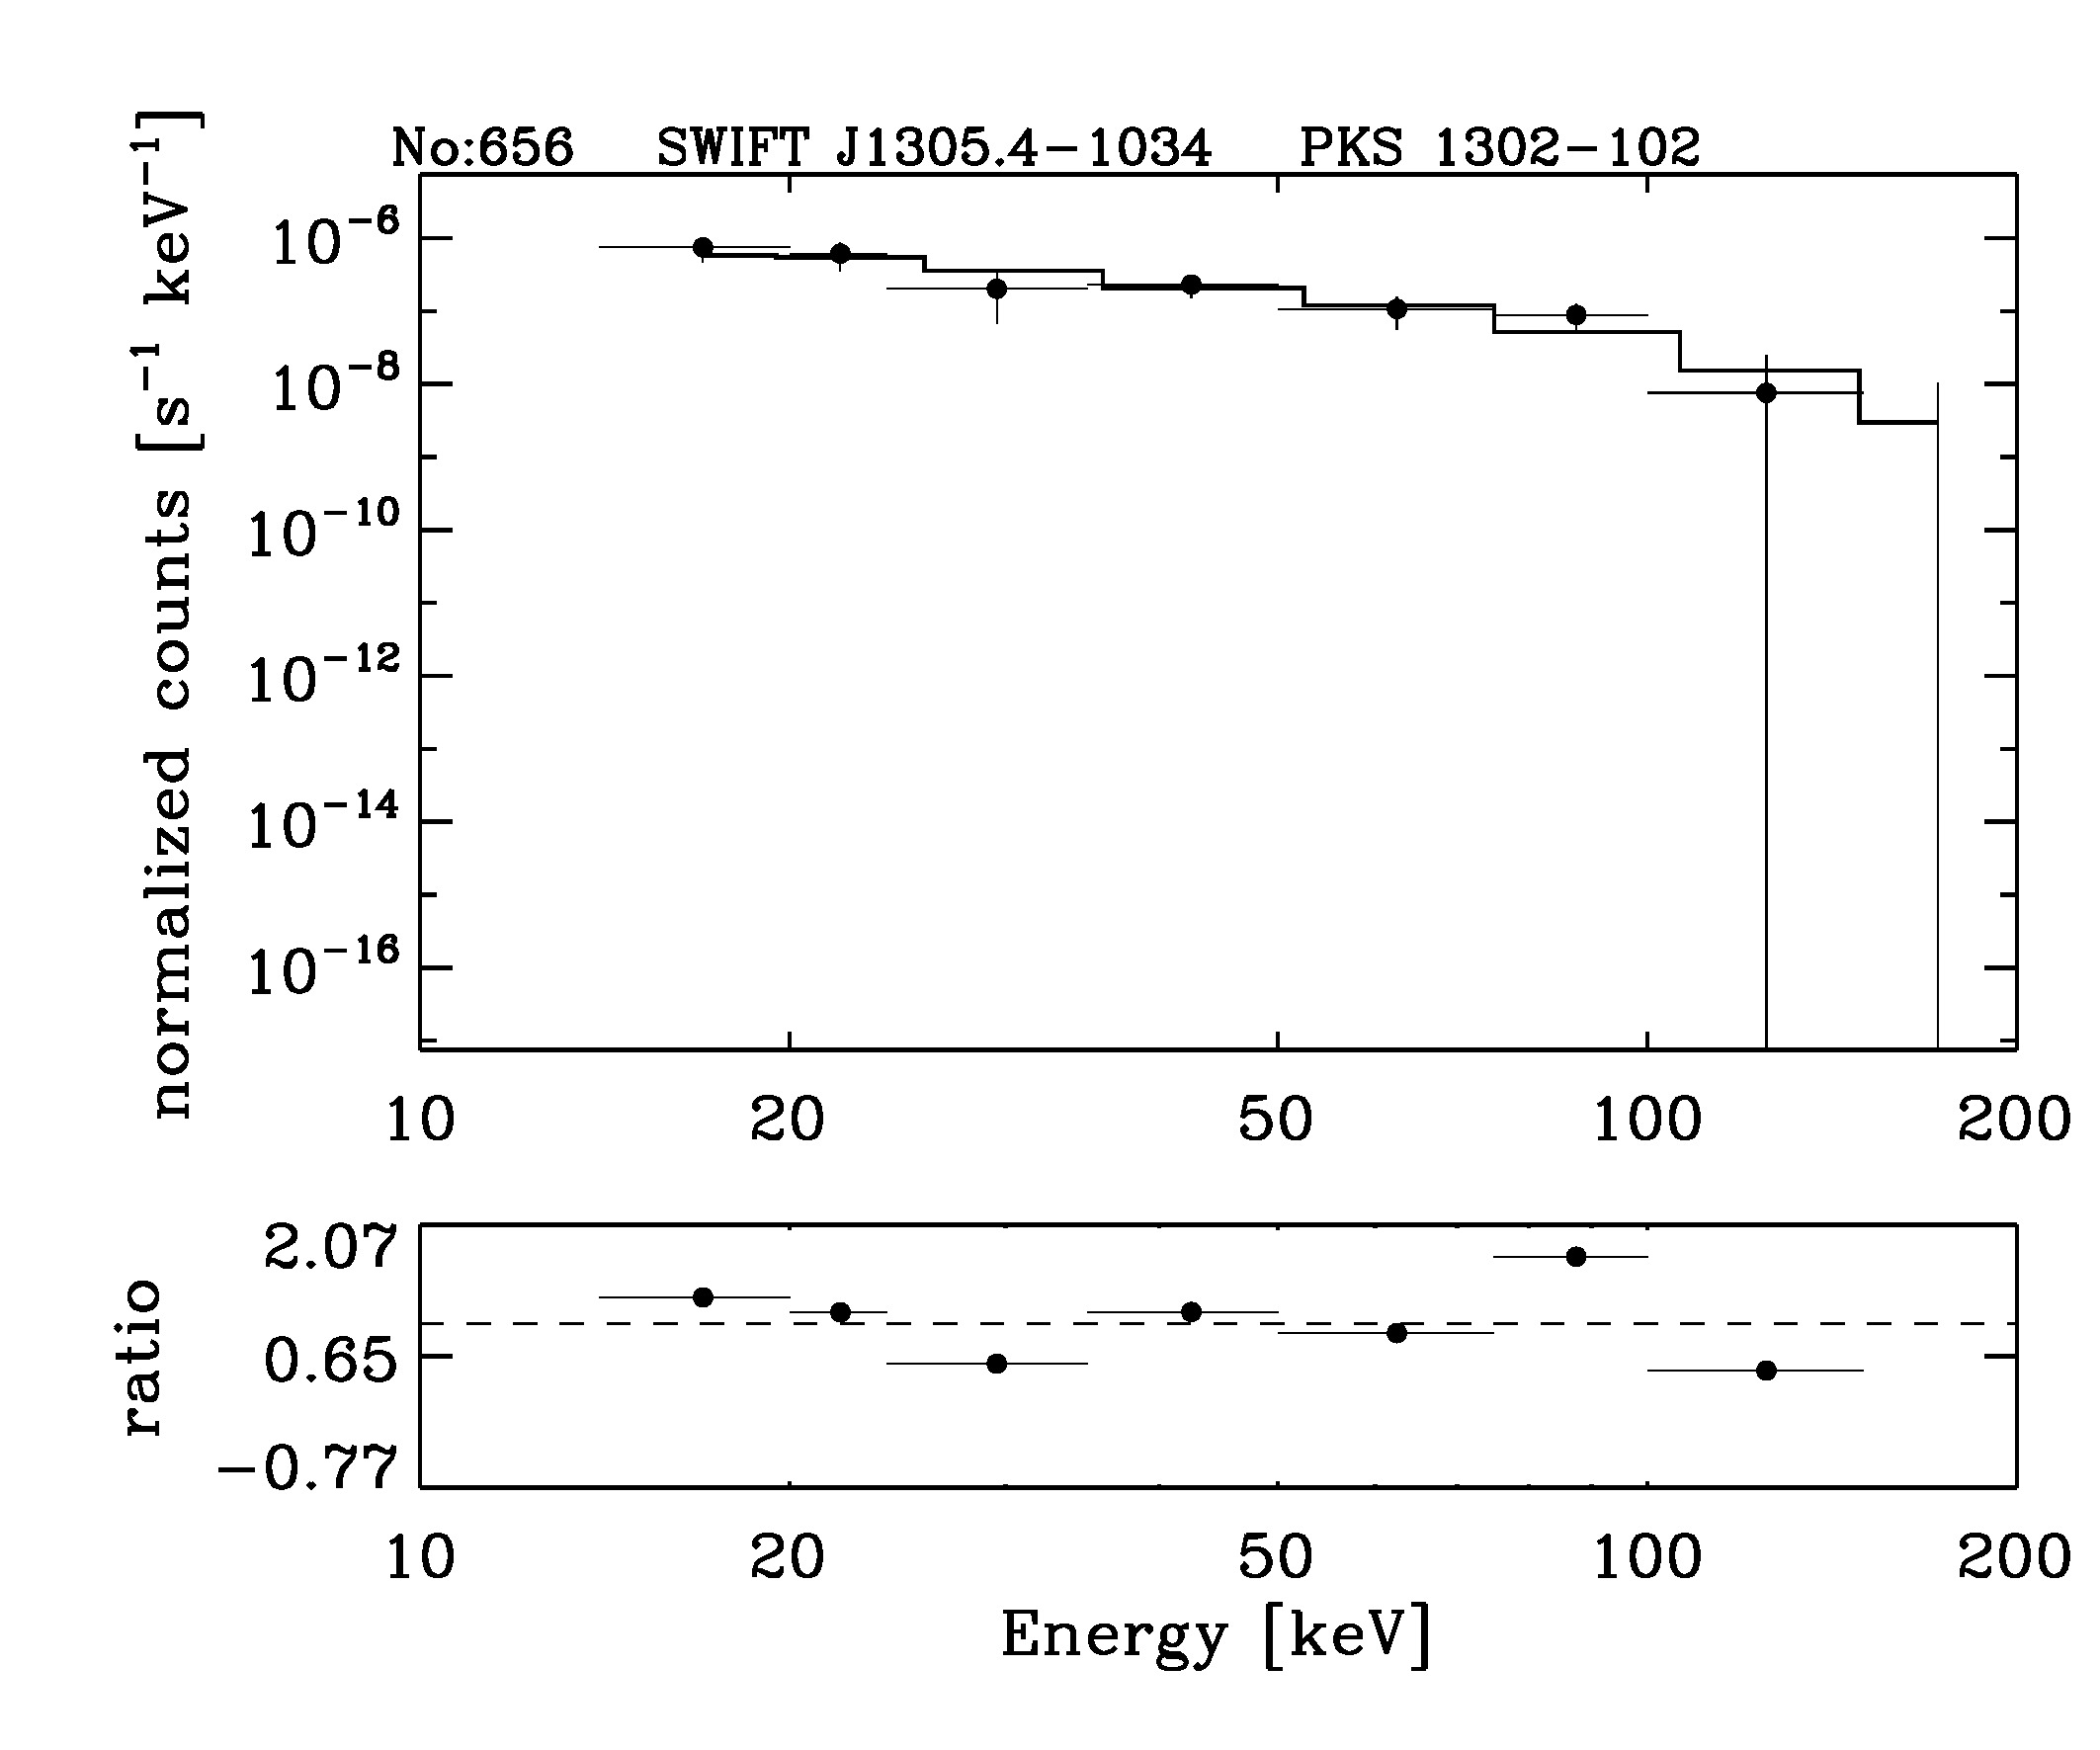 BAT Spectrum for SWIFT J1305.4-1034